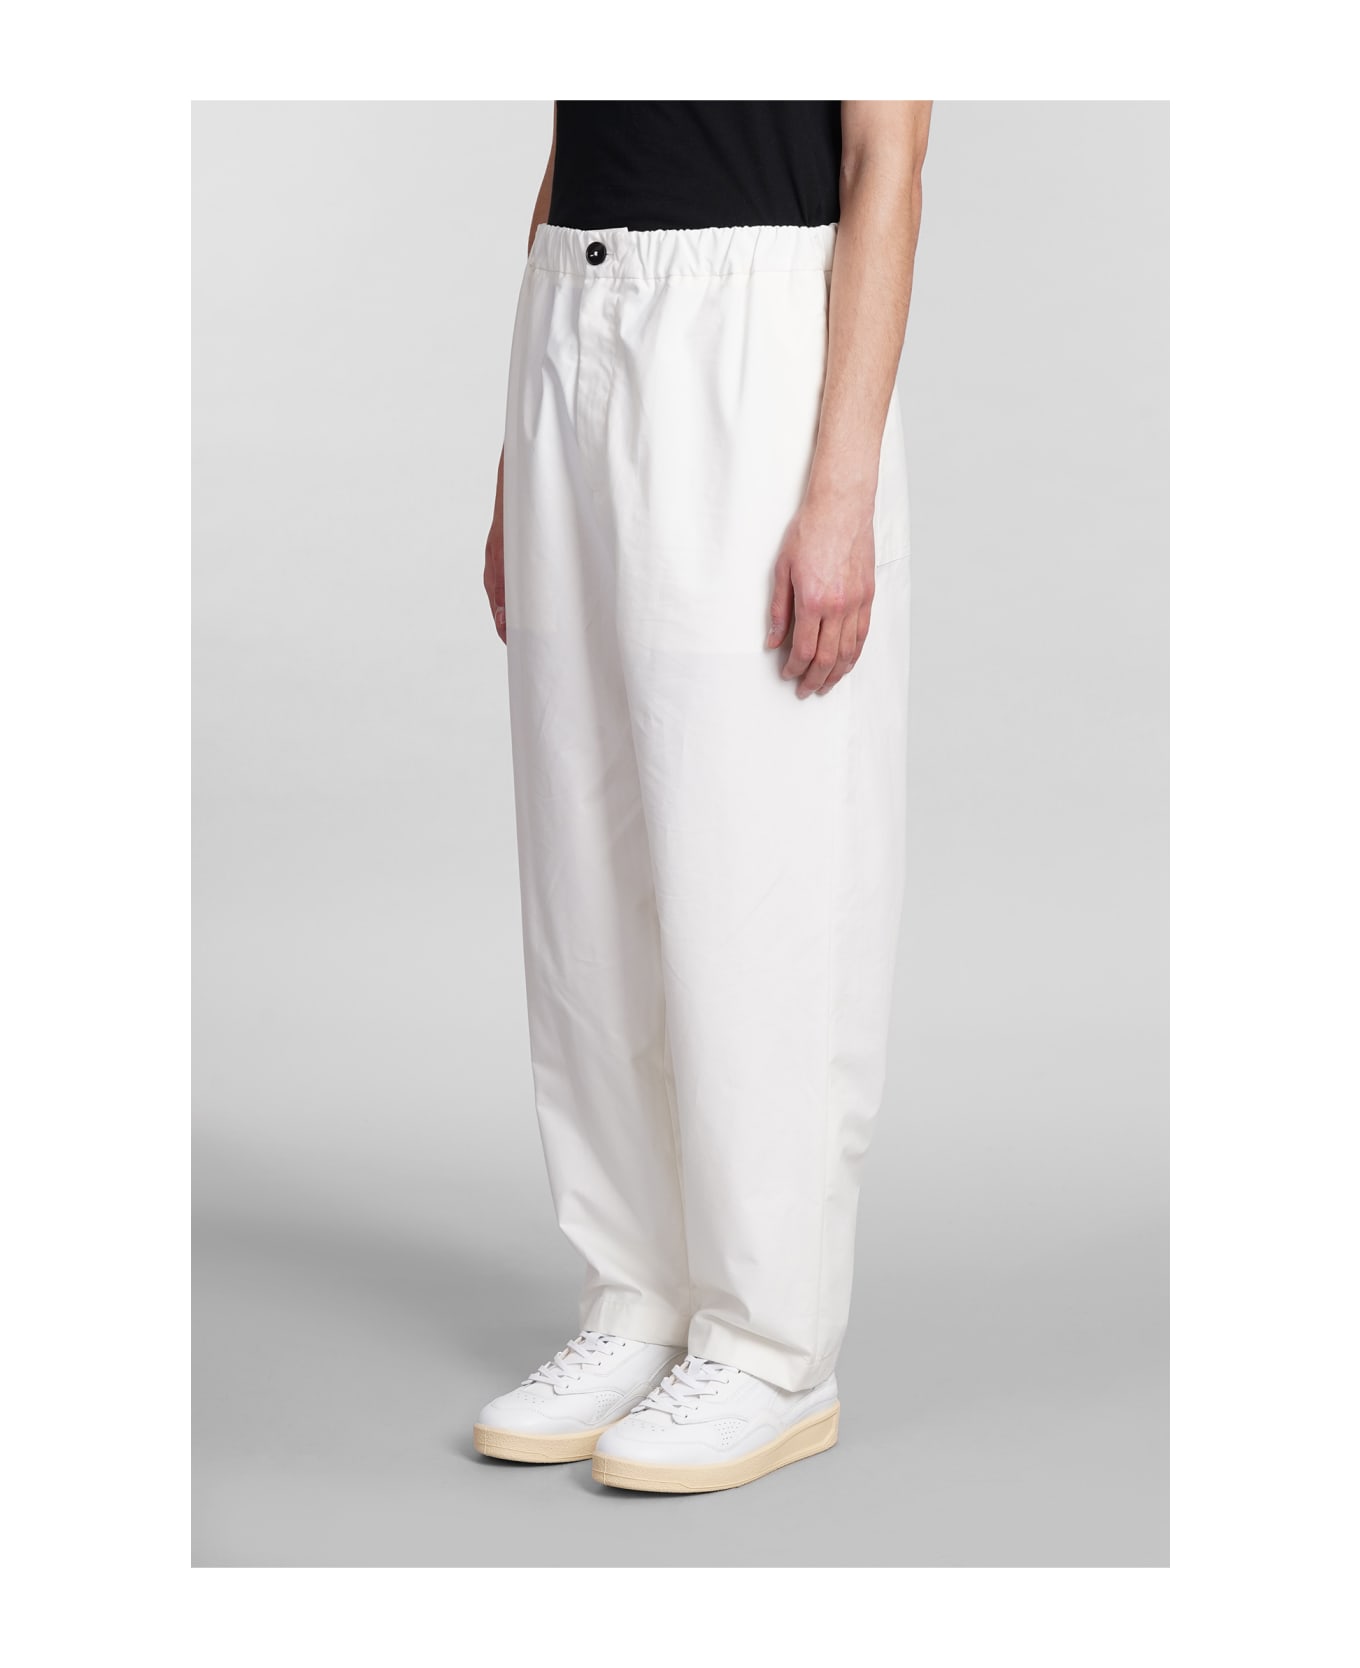 Jil Sander Pants In White Cotton - BEIGE